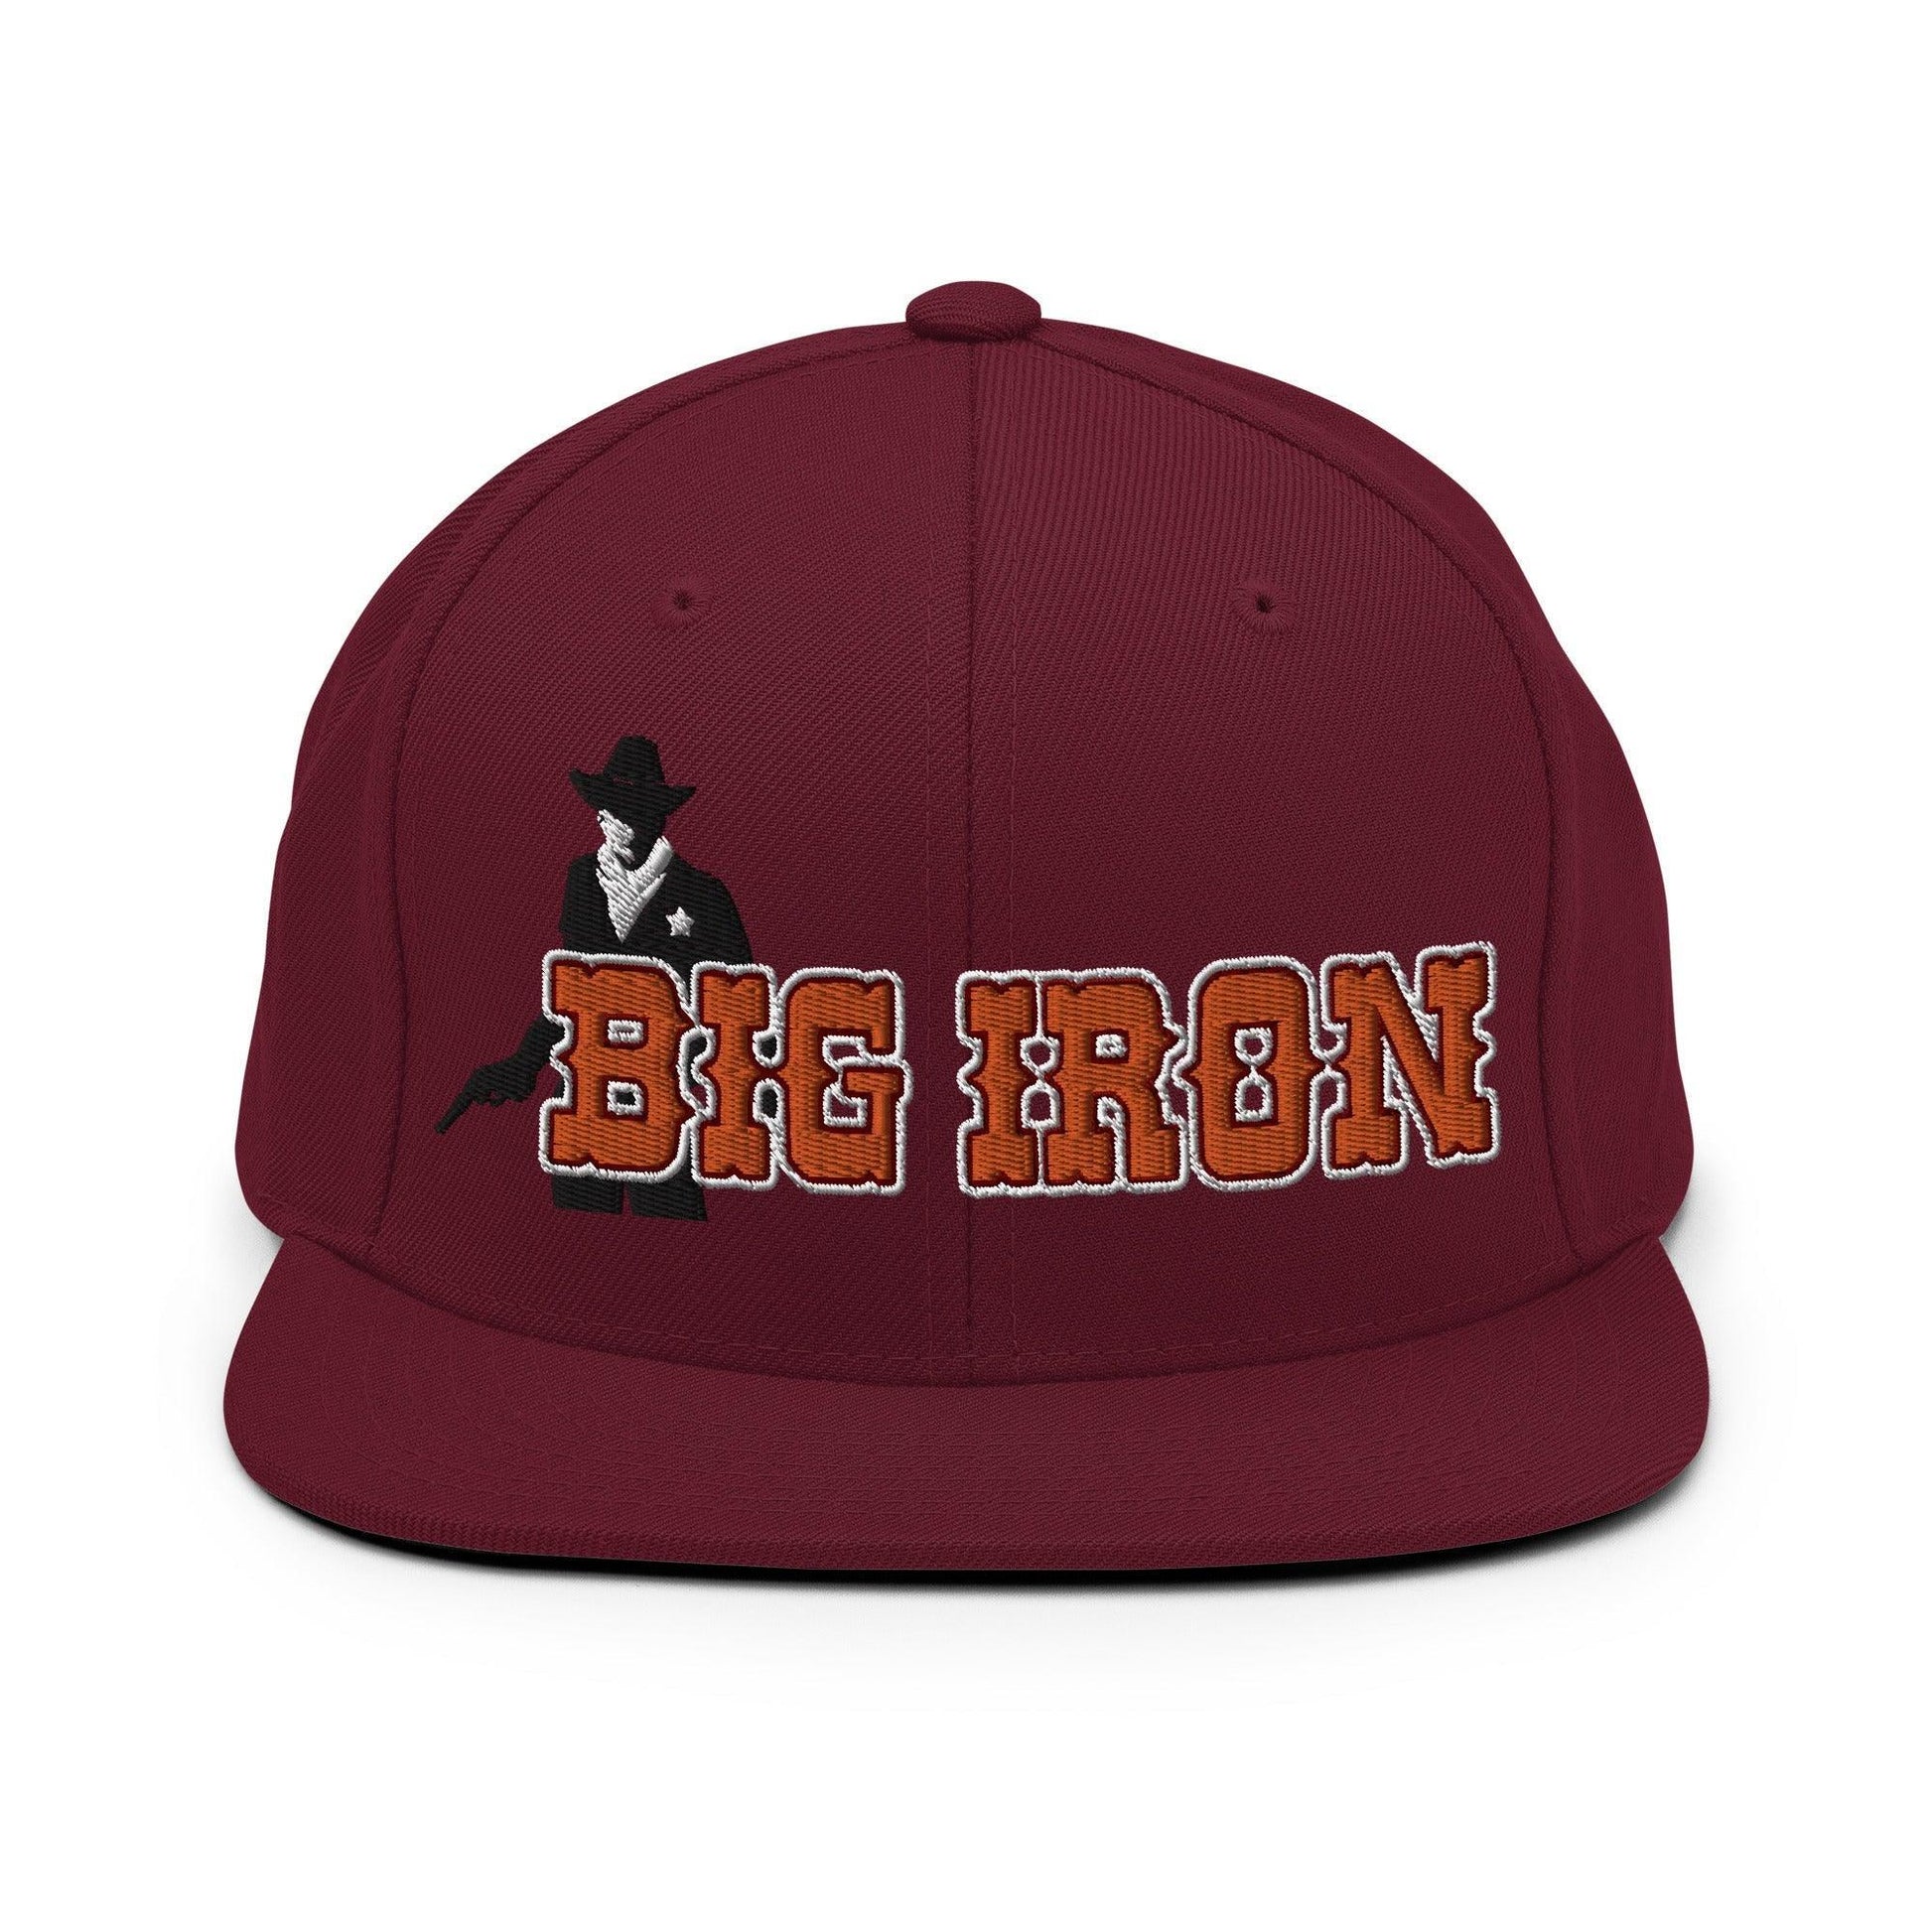 Big Iron Western Snapback Hat Maroon